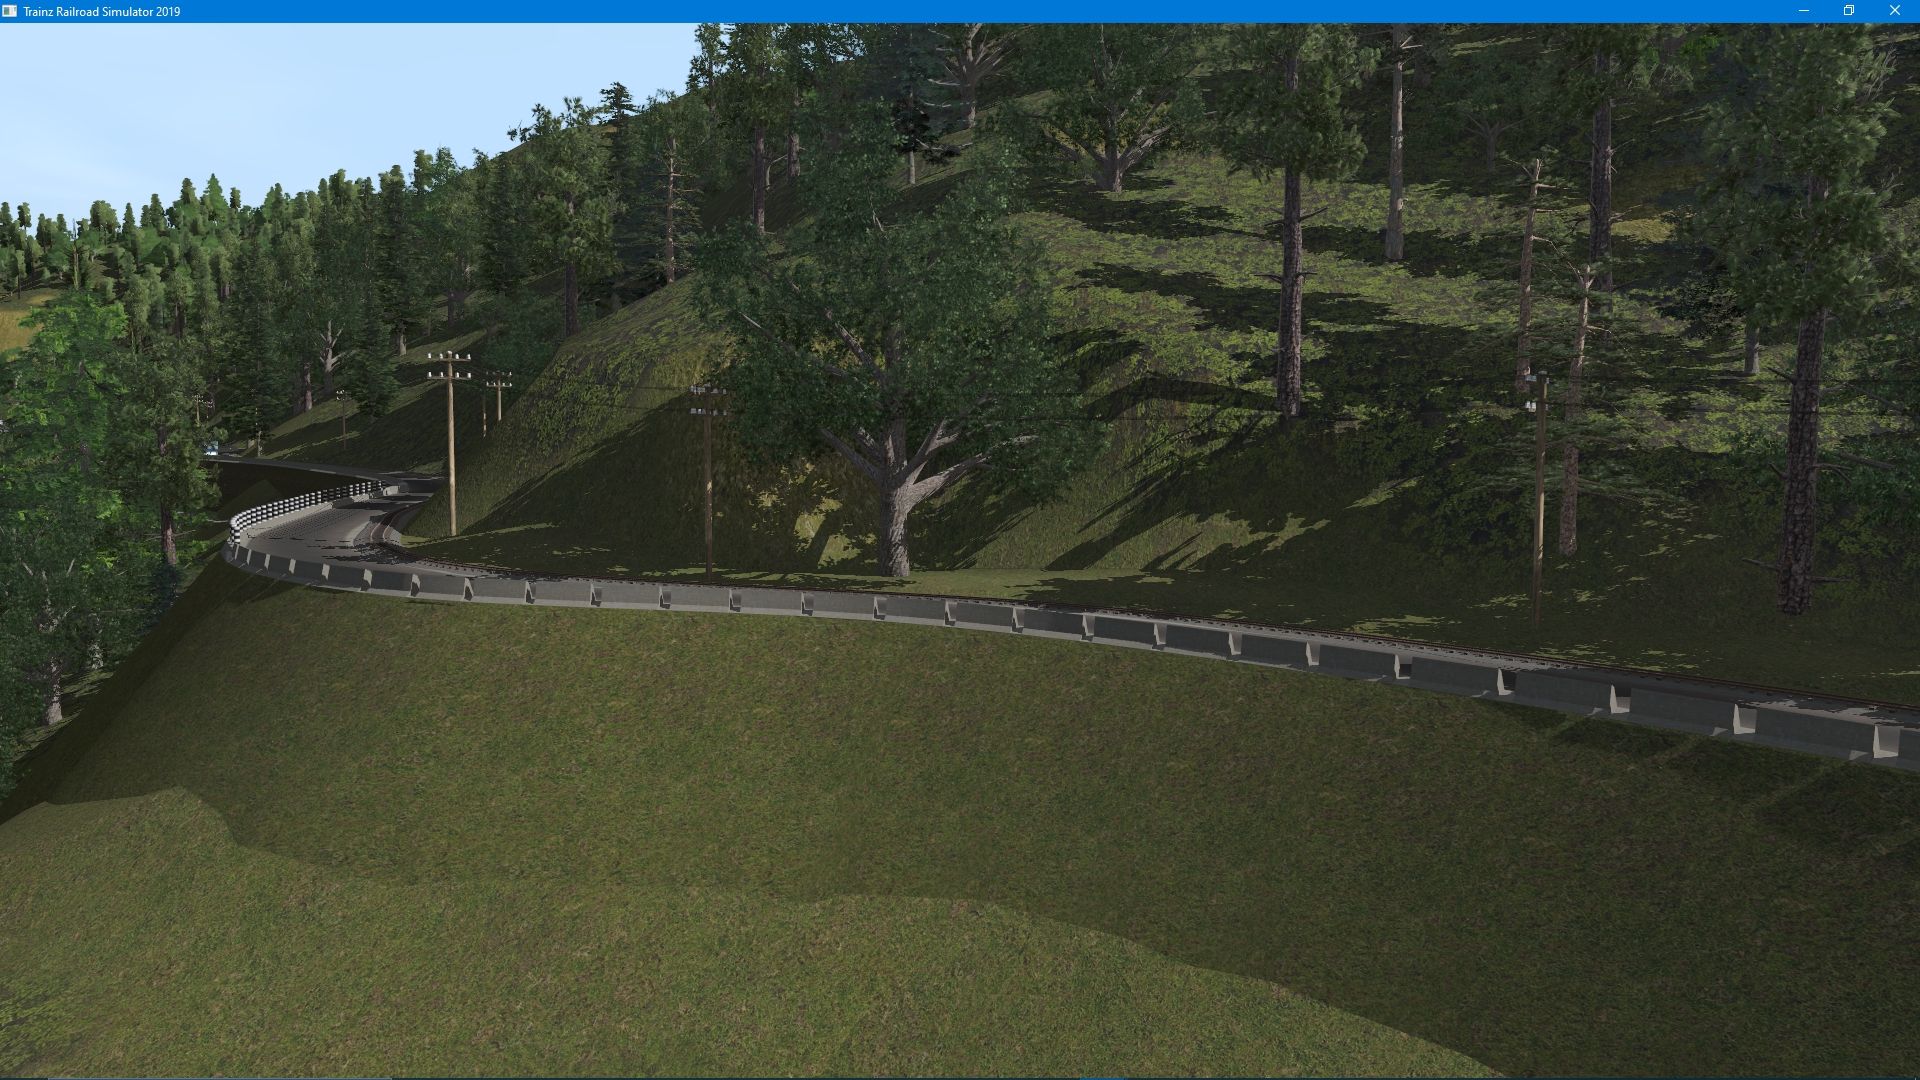 New-sloped-embankments.jpg